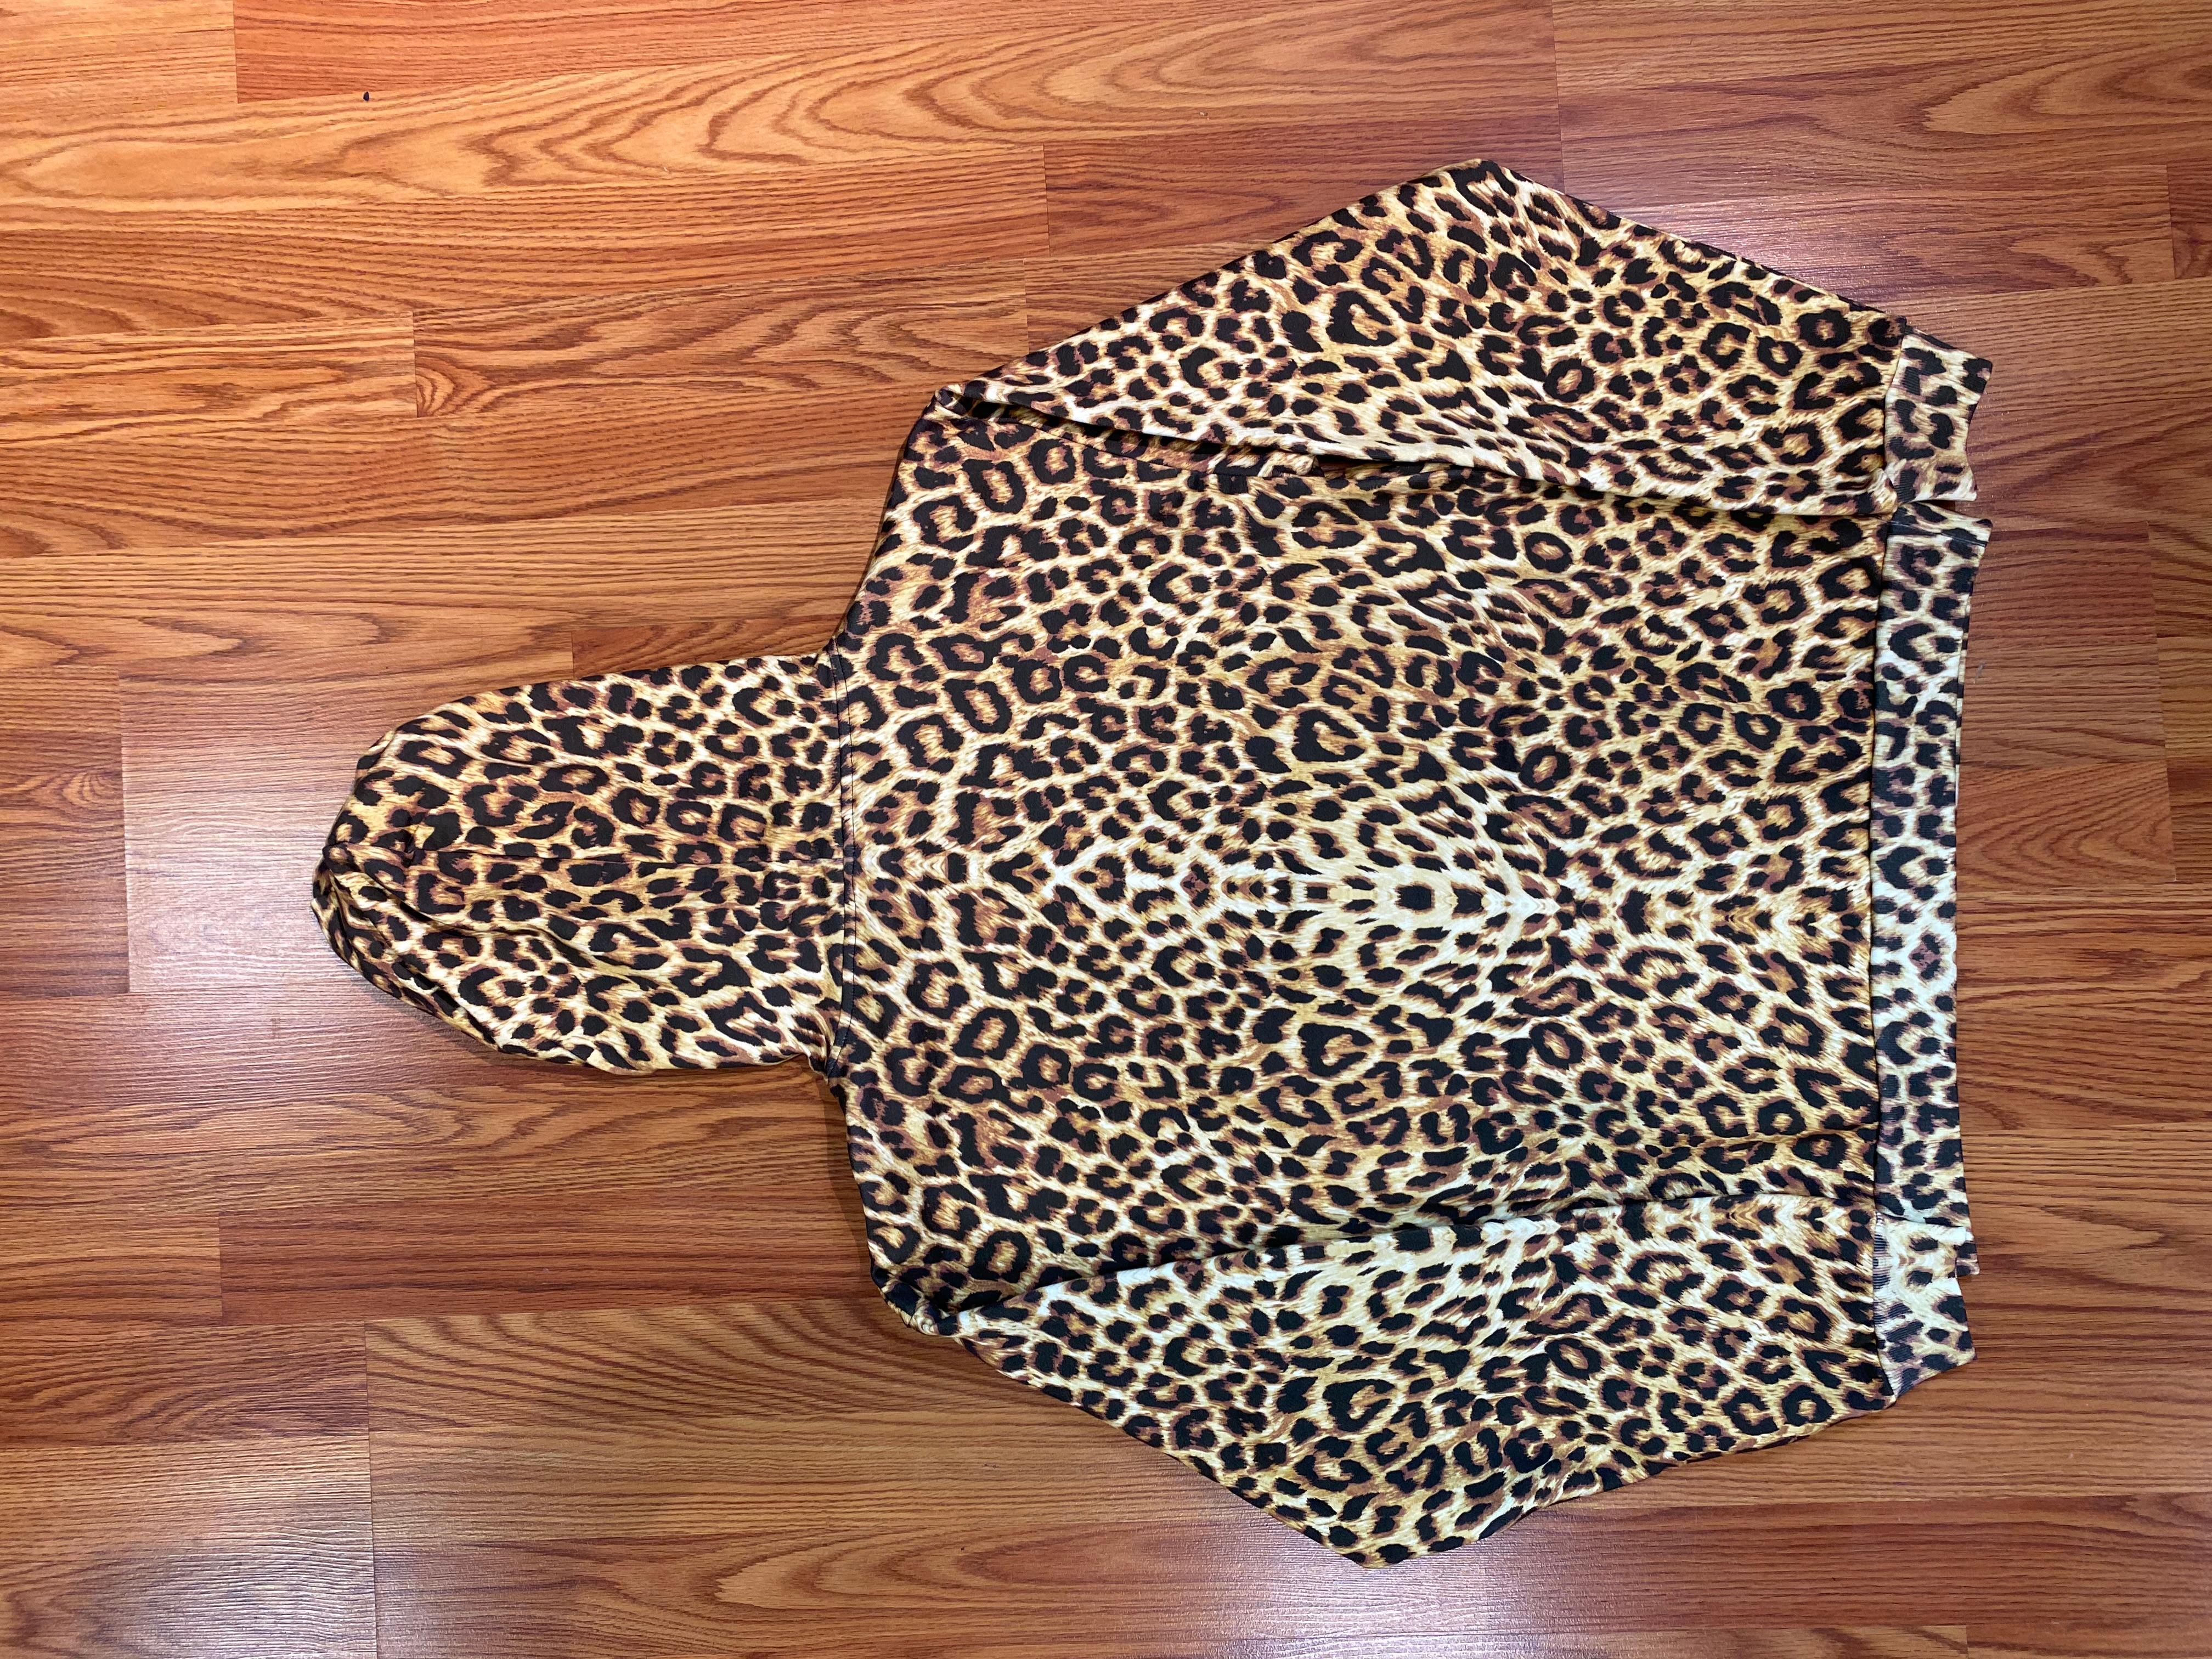 Neuf avec étiquette
Celine - Sweat à capuche à logo imprimé léopard
Taille petite
Couleur rare

Toutes les ventes sont finales